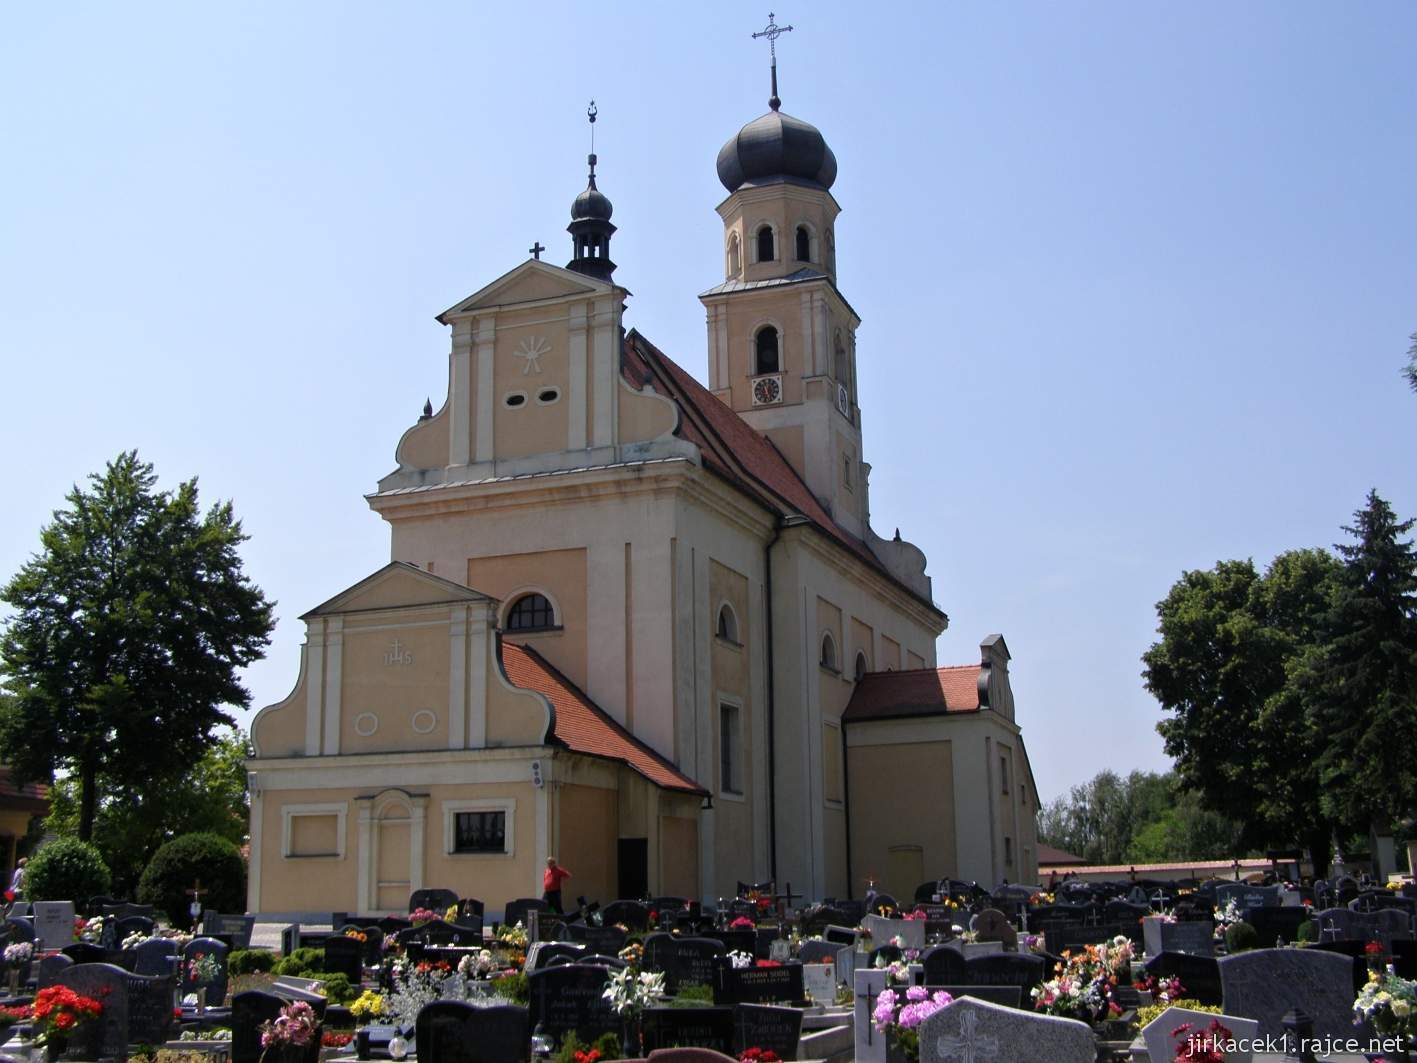 Tworków - kostel sv. Petra a Pavla (Kościół Św. Piotra i Pawła w Tworkowie) - pohled ze hřitova